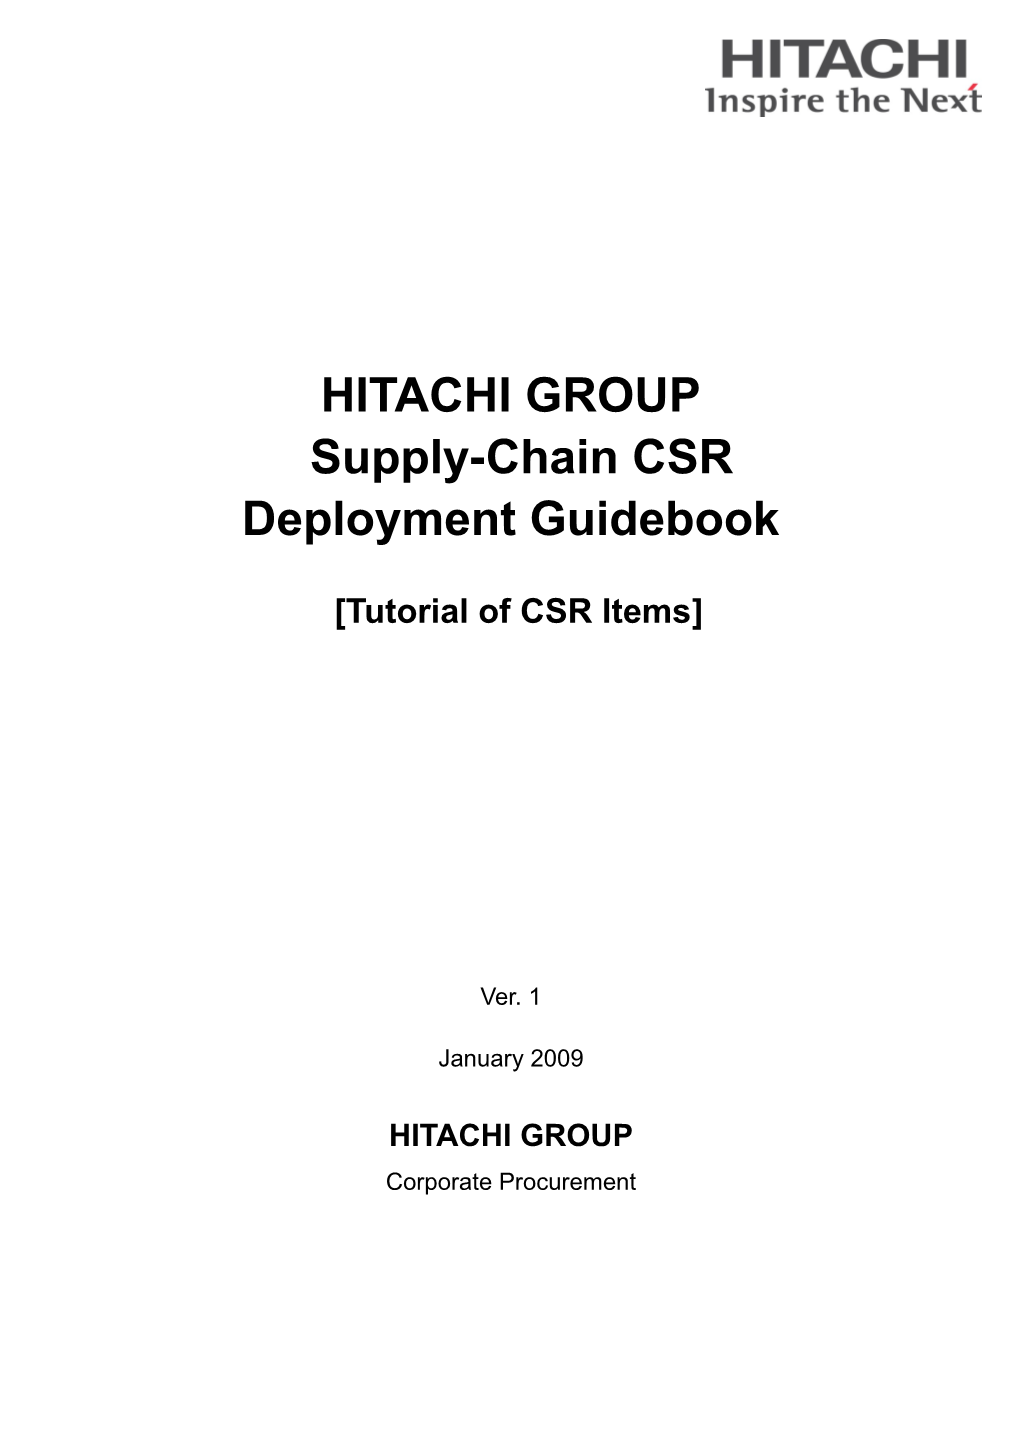 Supply-Chain CSR Deployment Guidebook